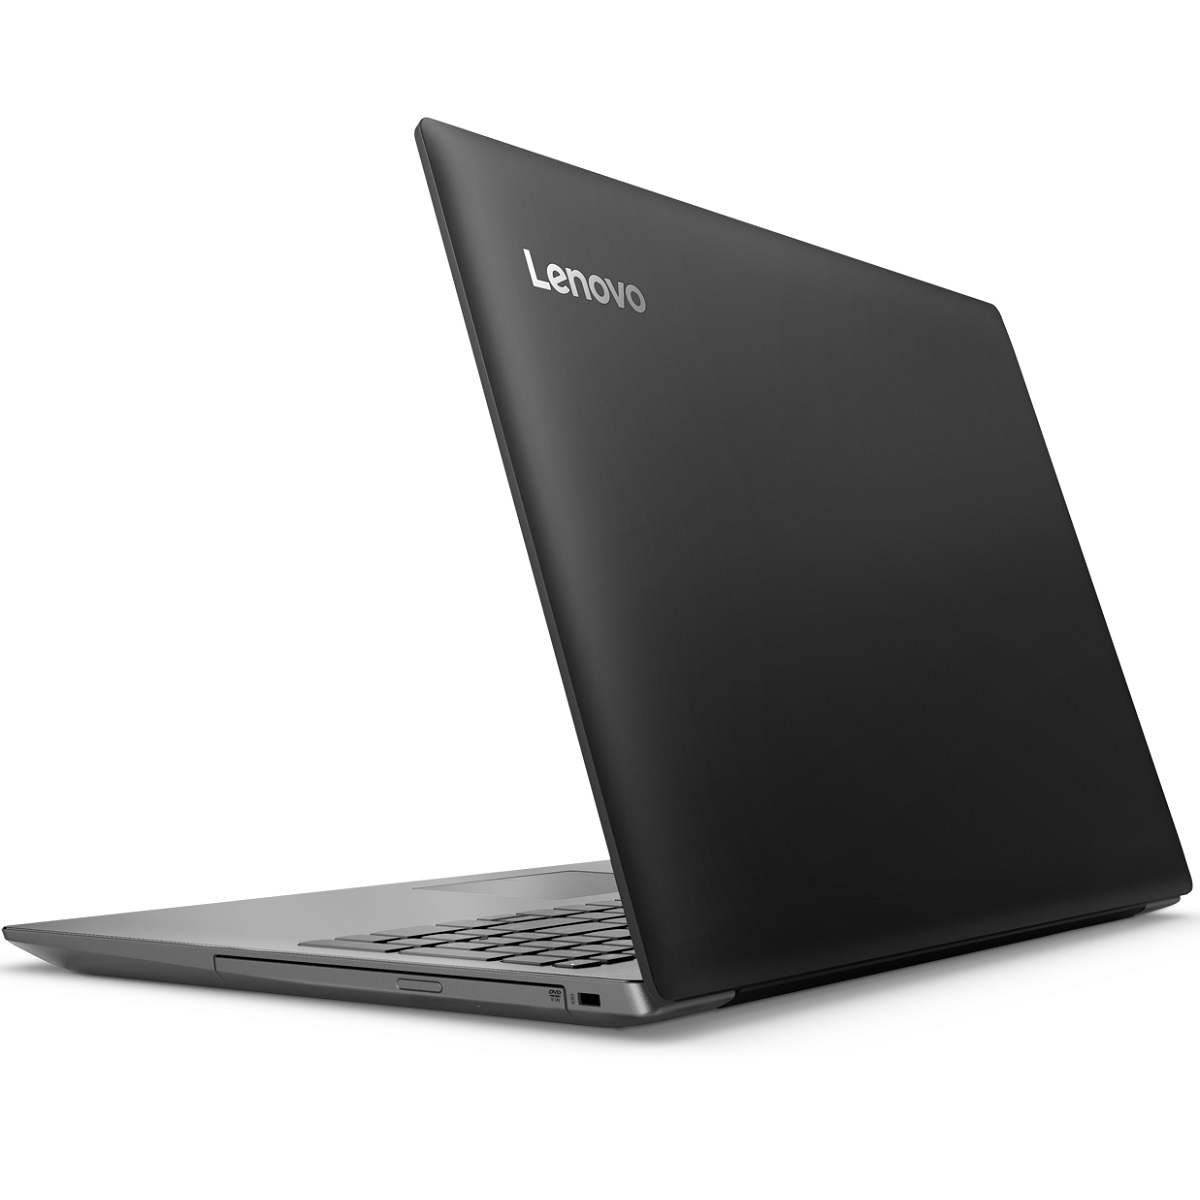 Купить Ноутбук Lenovo 320 15ast